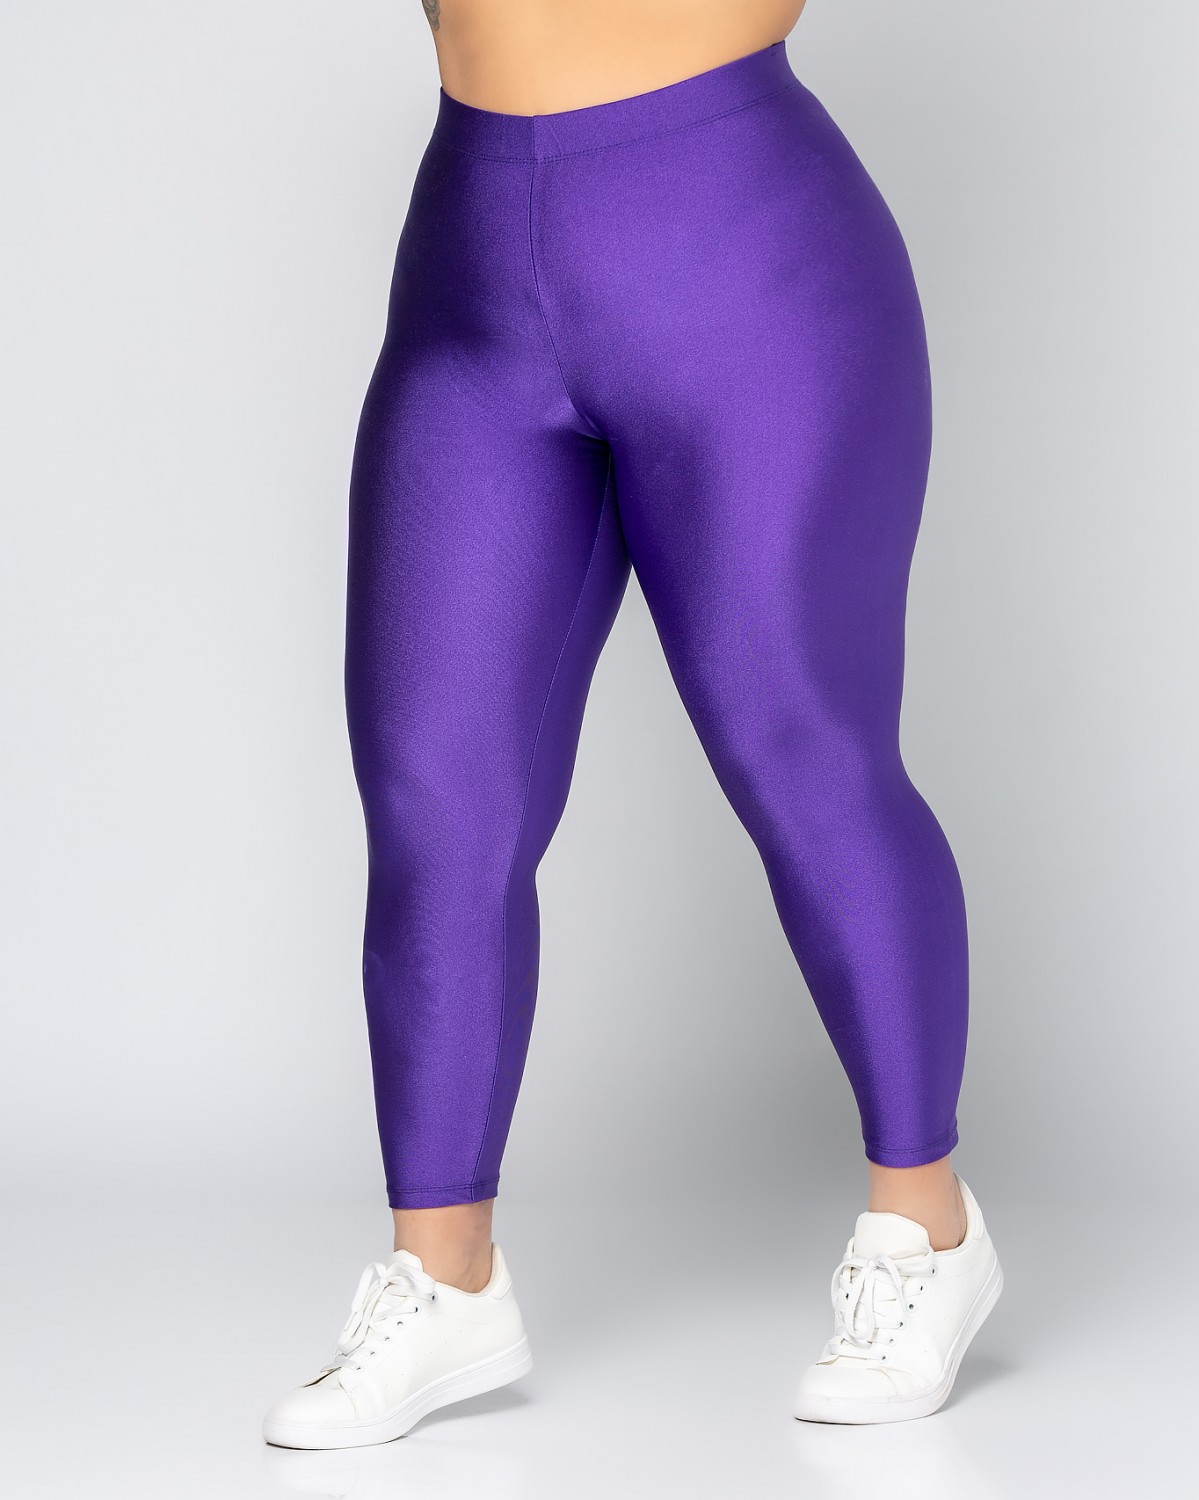 Długie metaliczne legginsy, kolor purpurowy